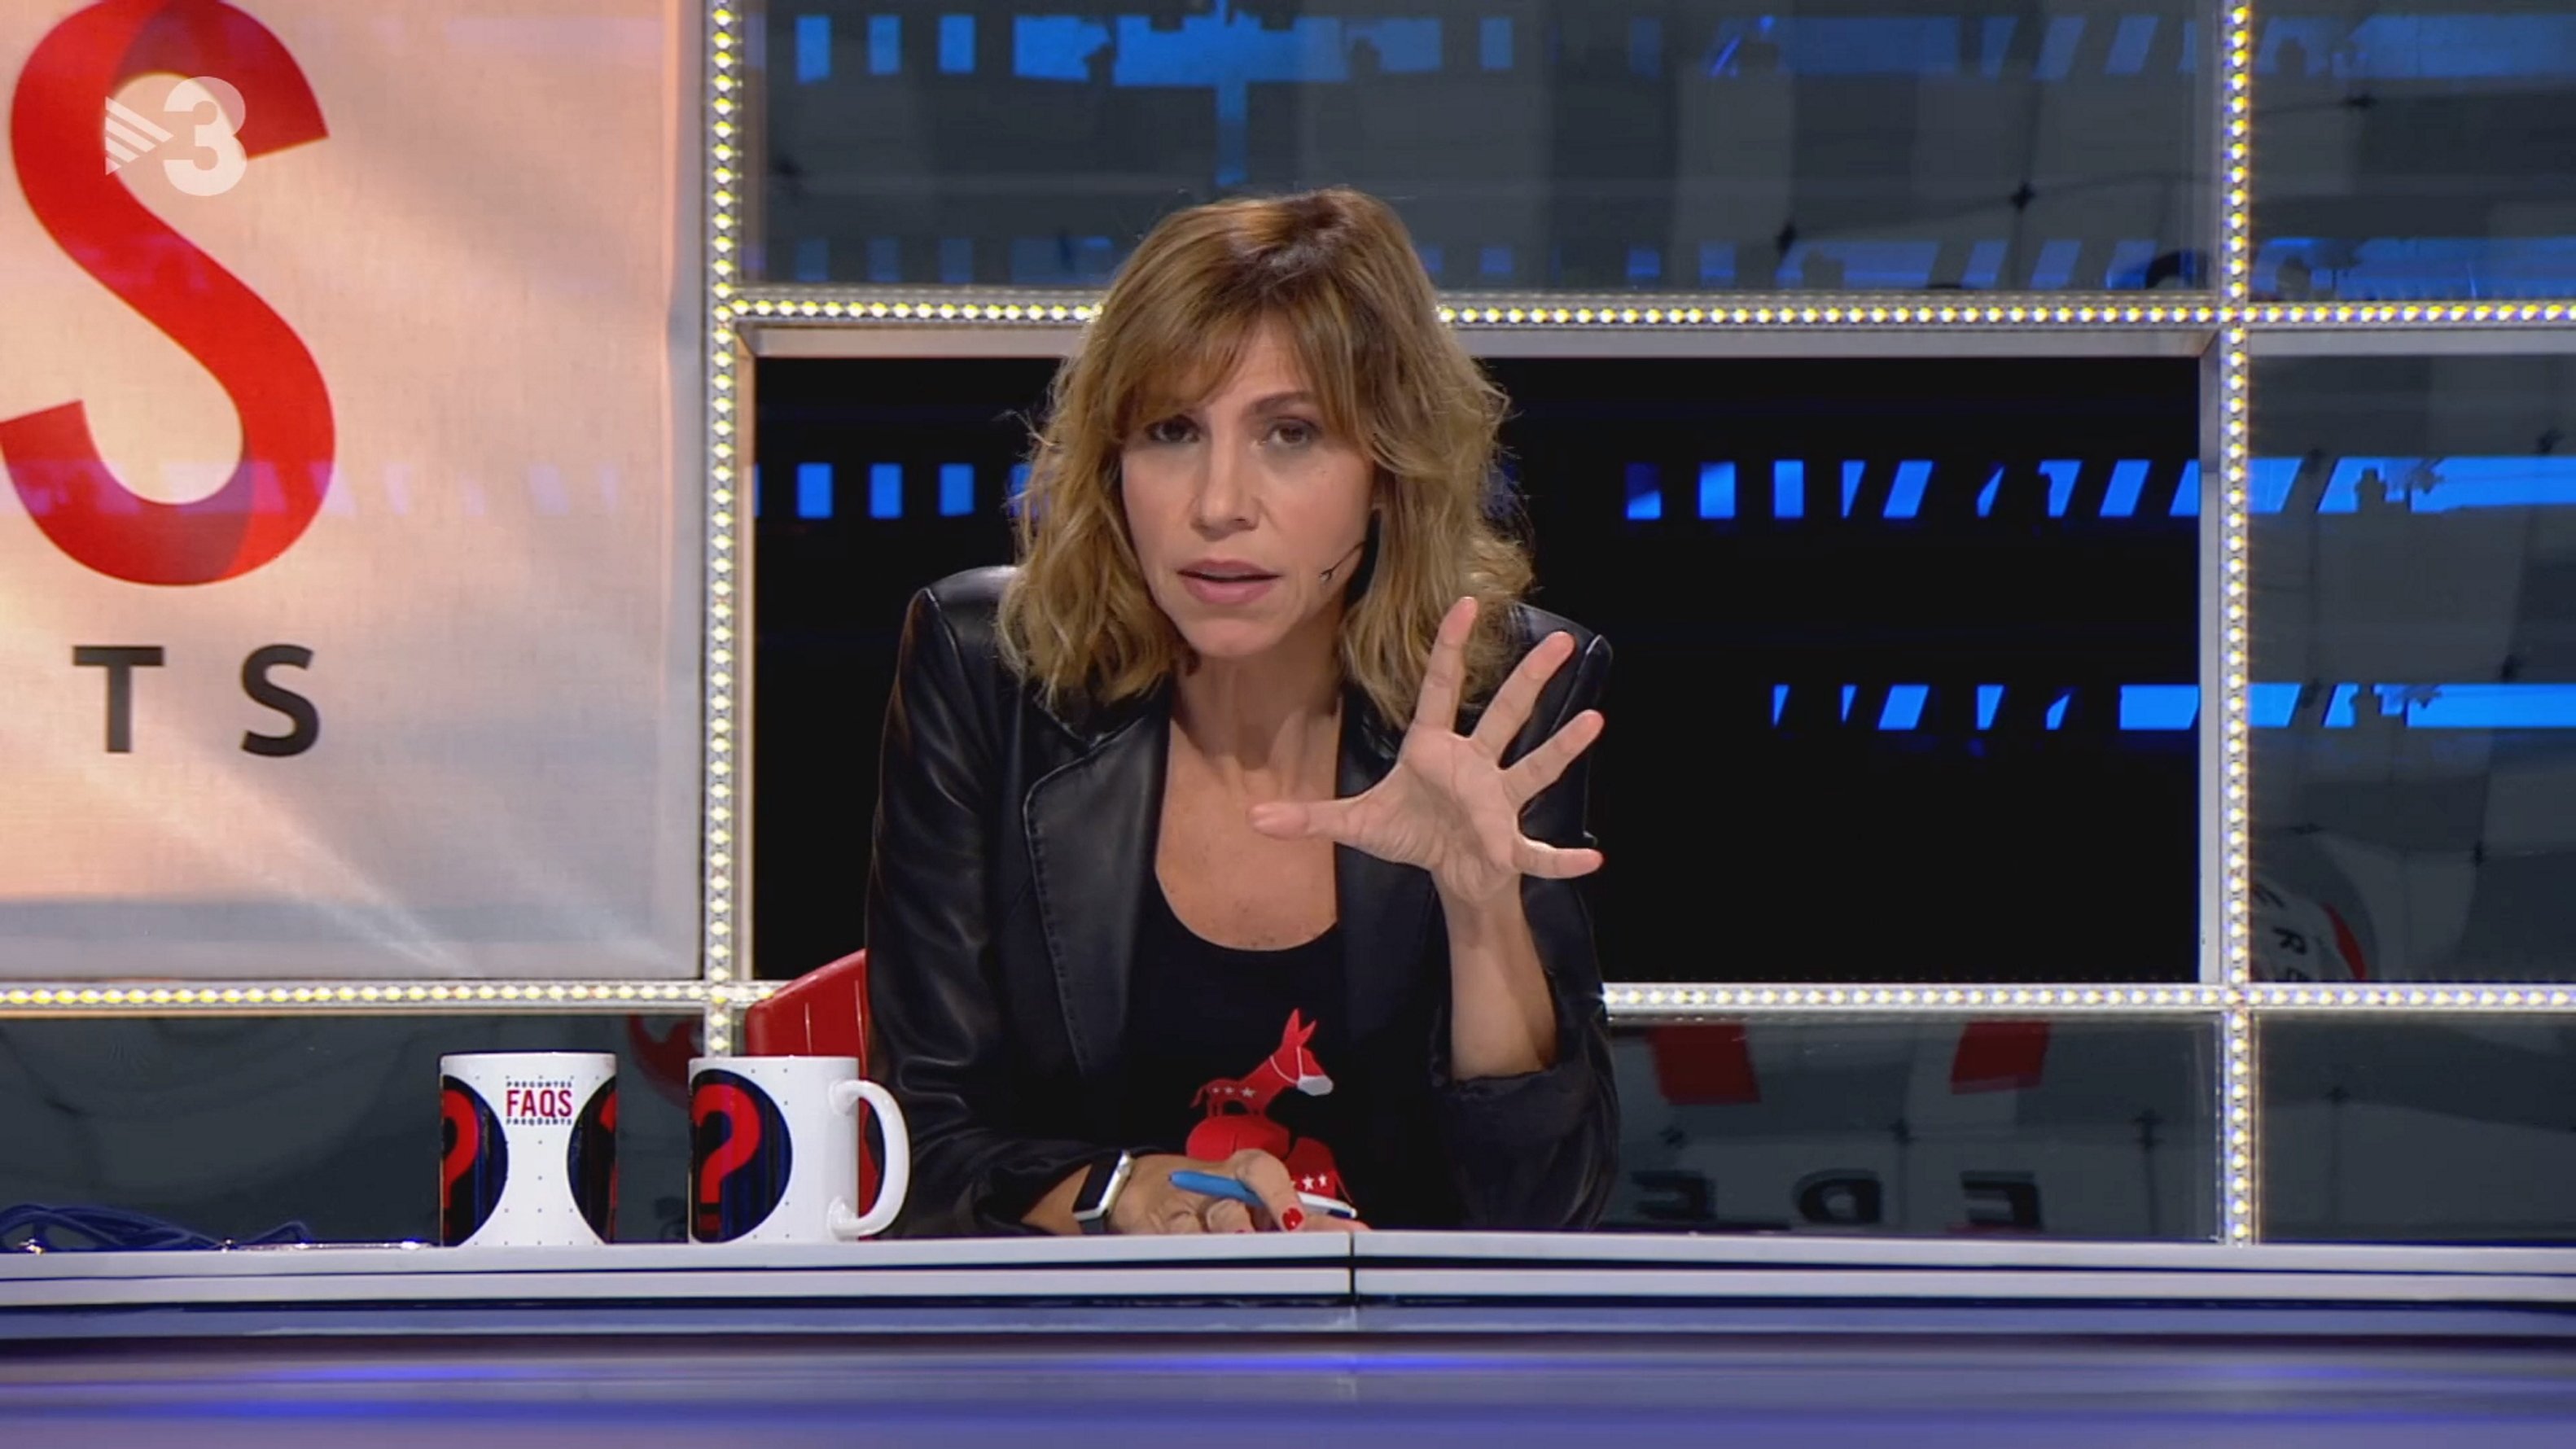 Curioso retorno en FAQS de TV3: vuelve al humorista que indignó a Eduard Pujol